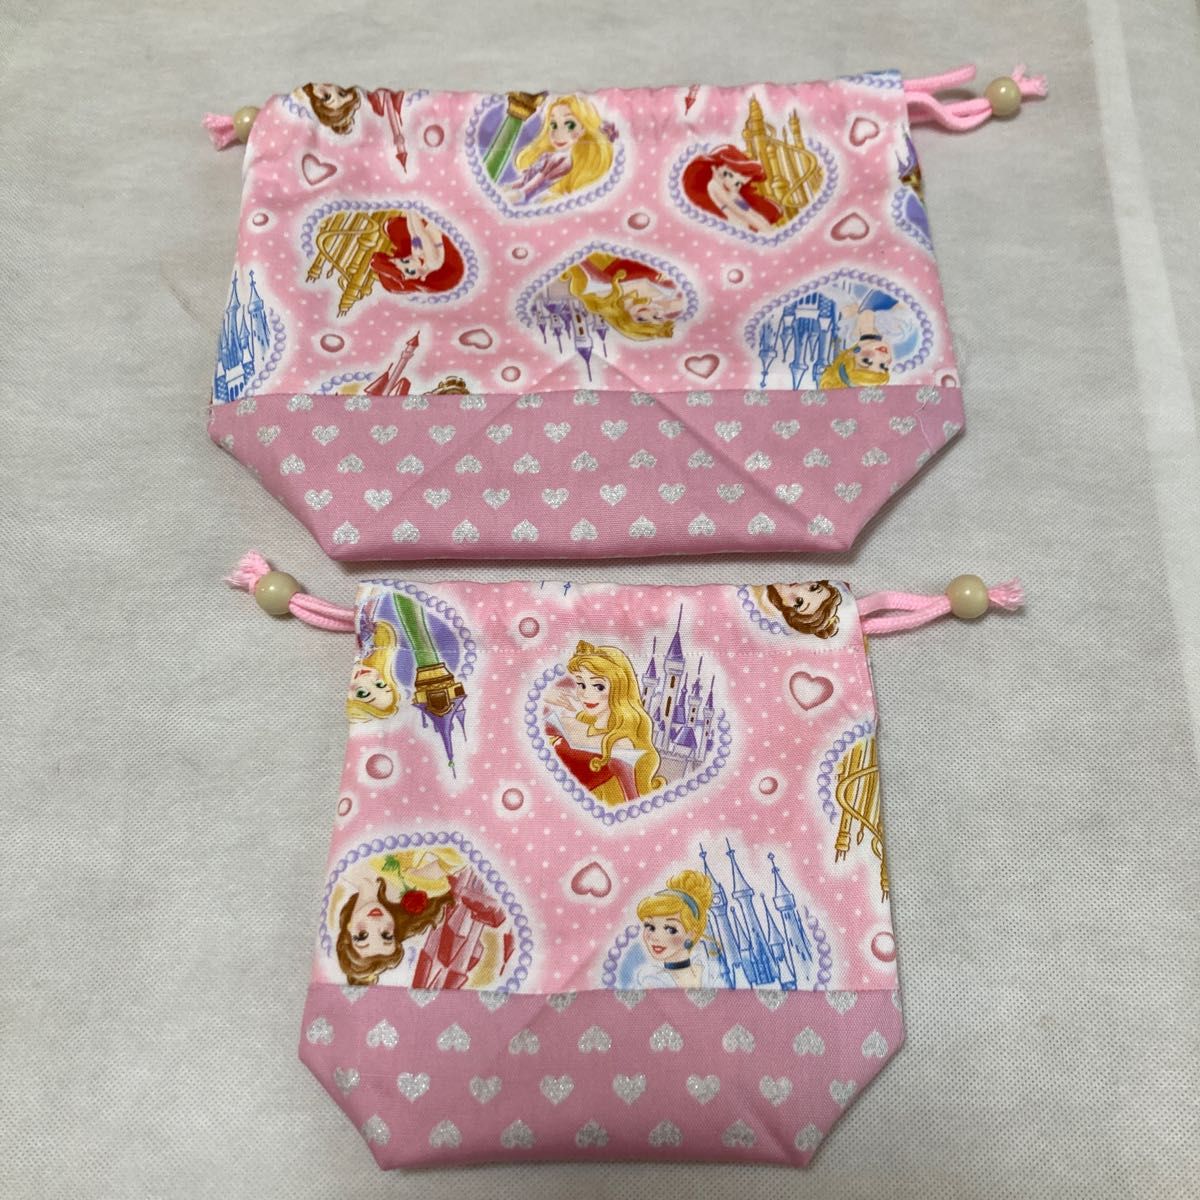 プリンセス お弁当袋 コップ袋 ランチョンマットセット ピンク系